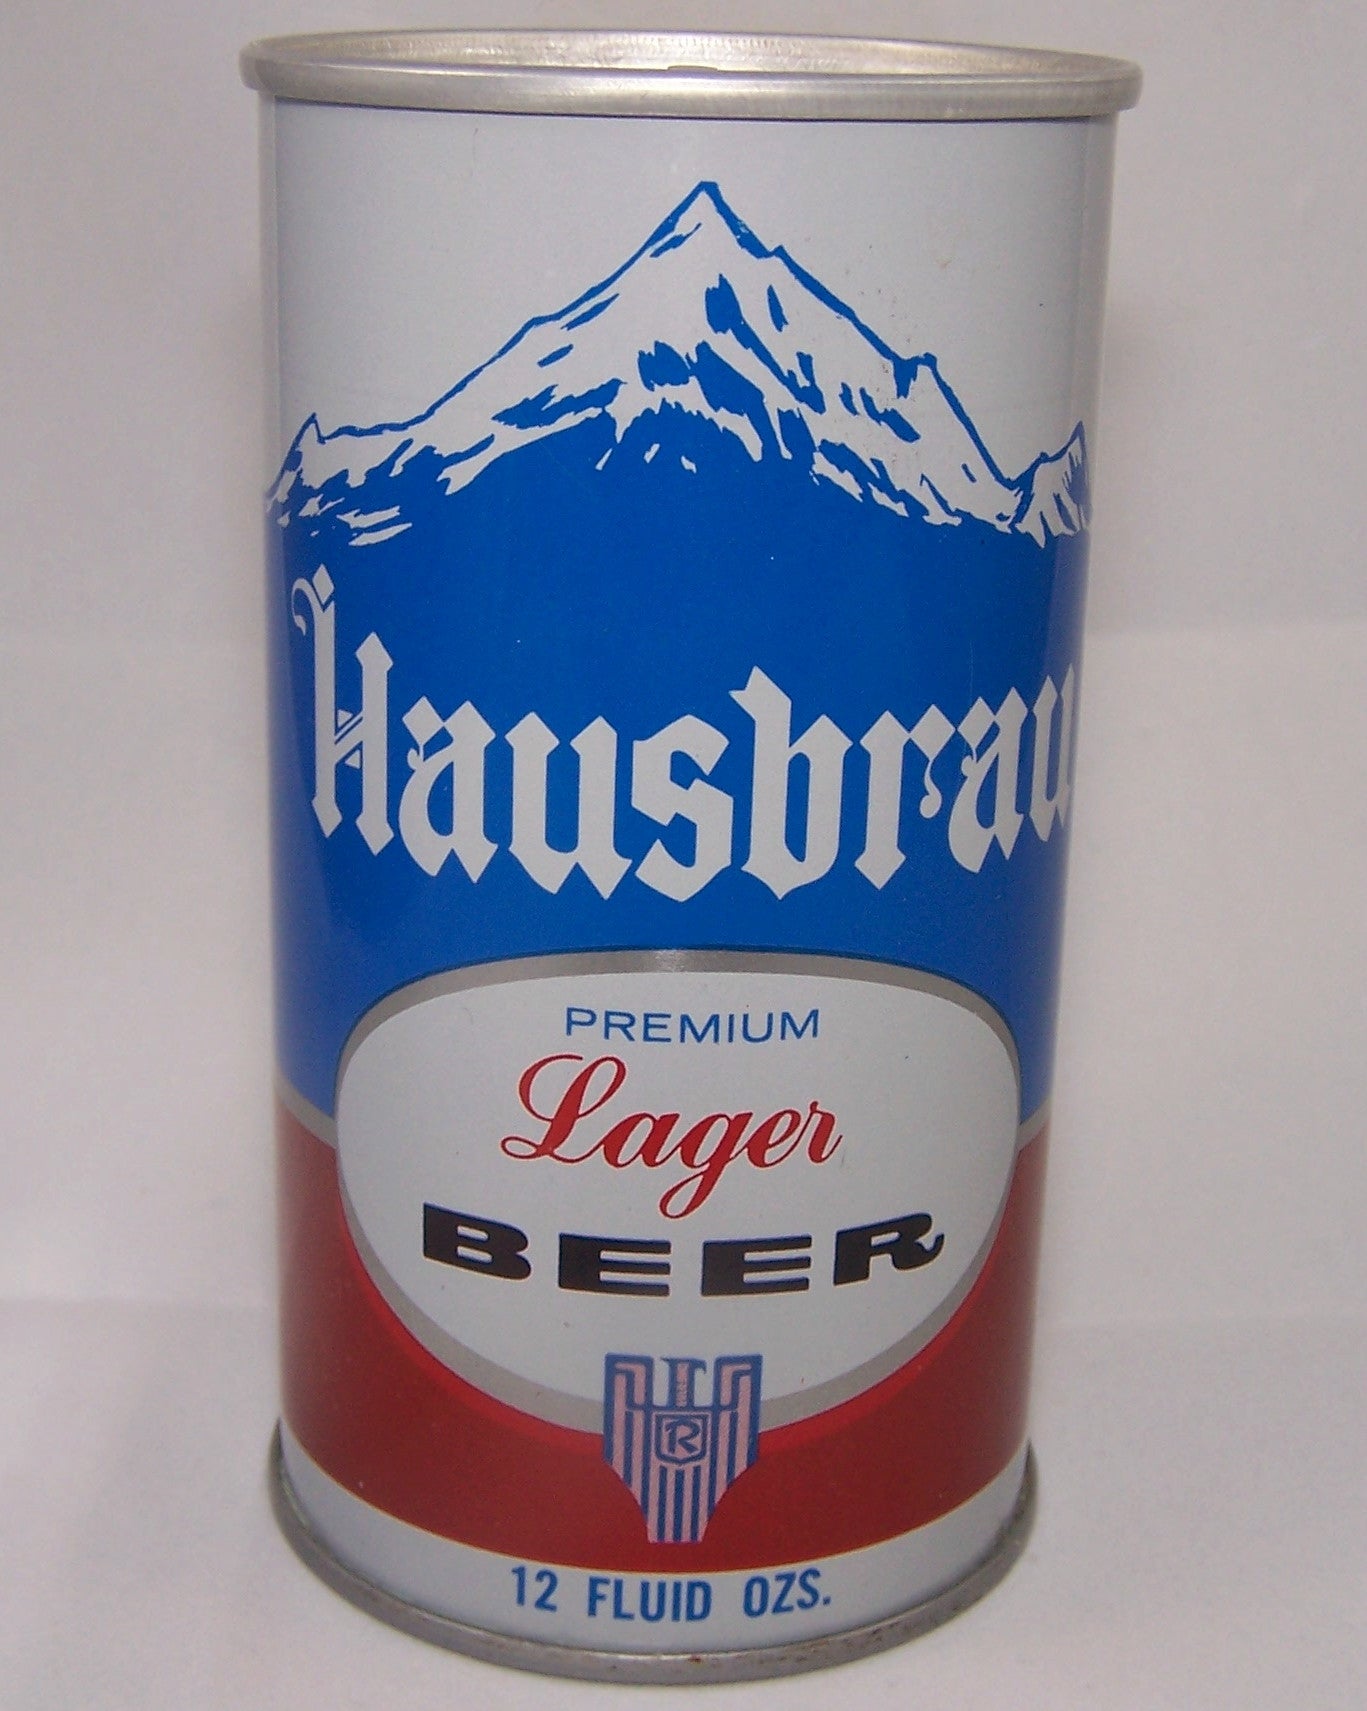 Hausbrau Premium Lager Beer, USBC II, 74-20, Grade A1+ Sold 5/1/15